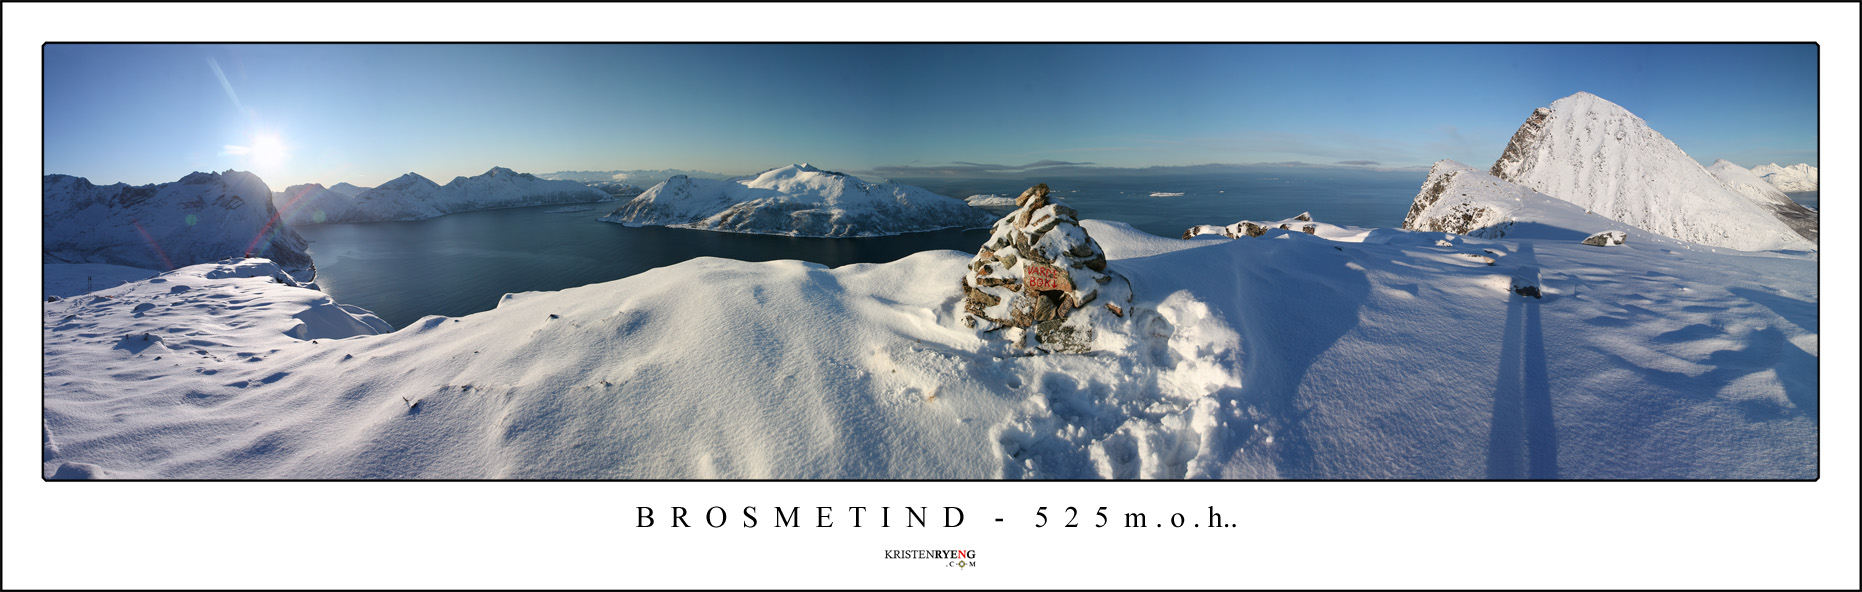 Panorama-Brosmetind.jpg - Brosmetind - 525 moh (Kvaløya)